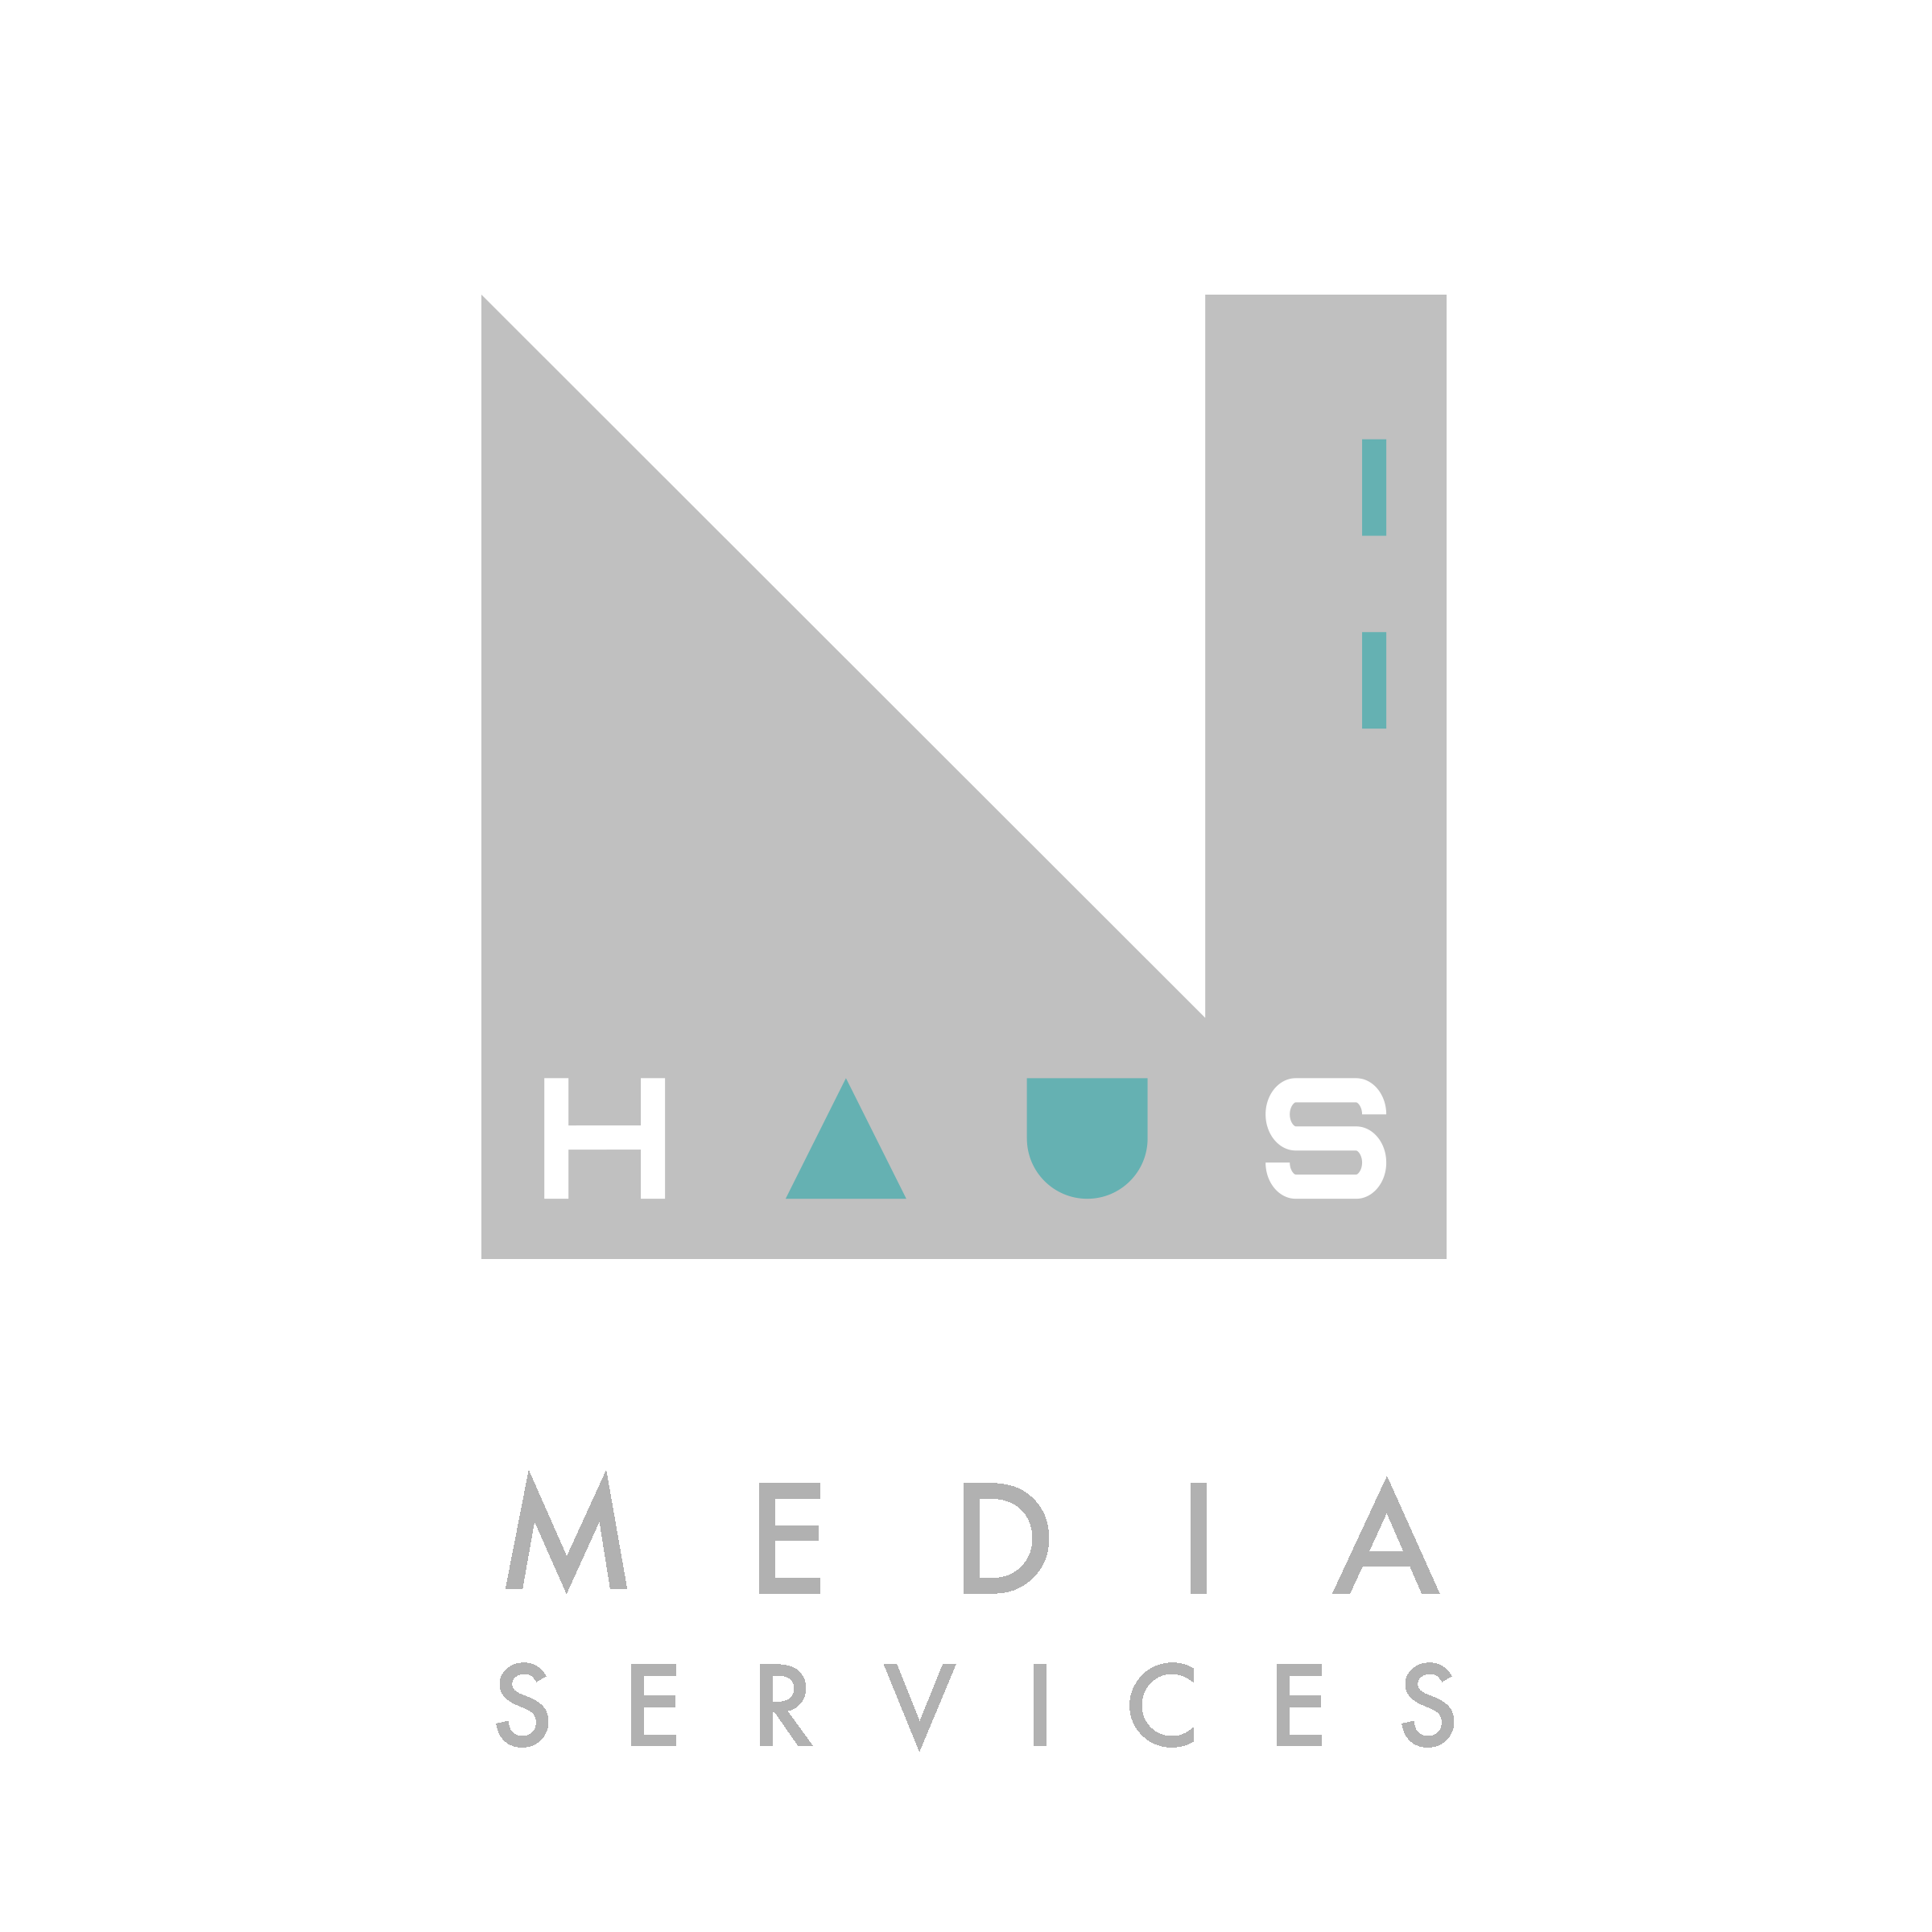 NHaus-MediaServices_Logo.png